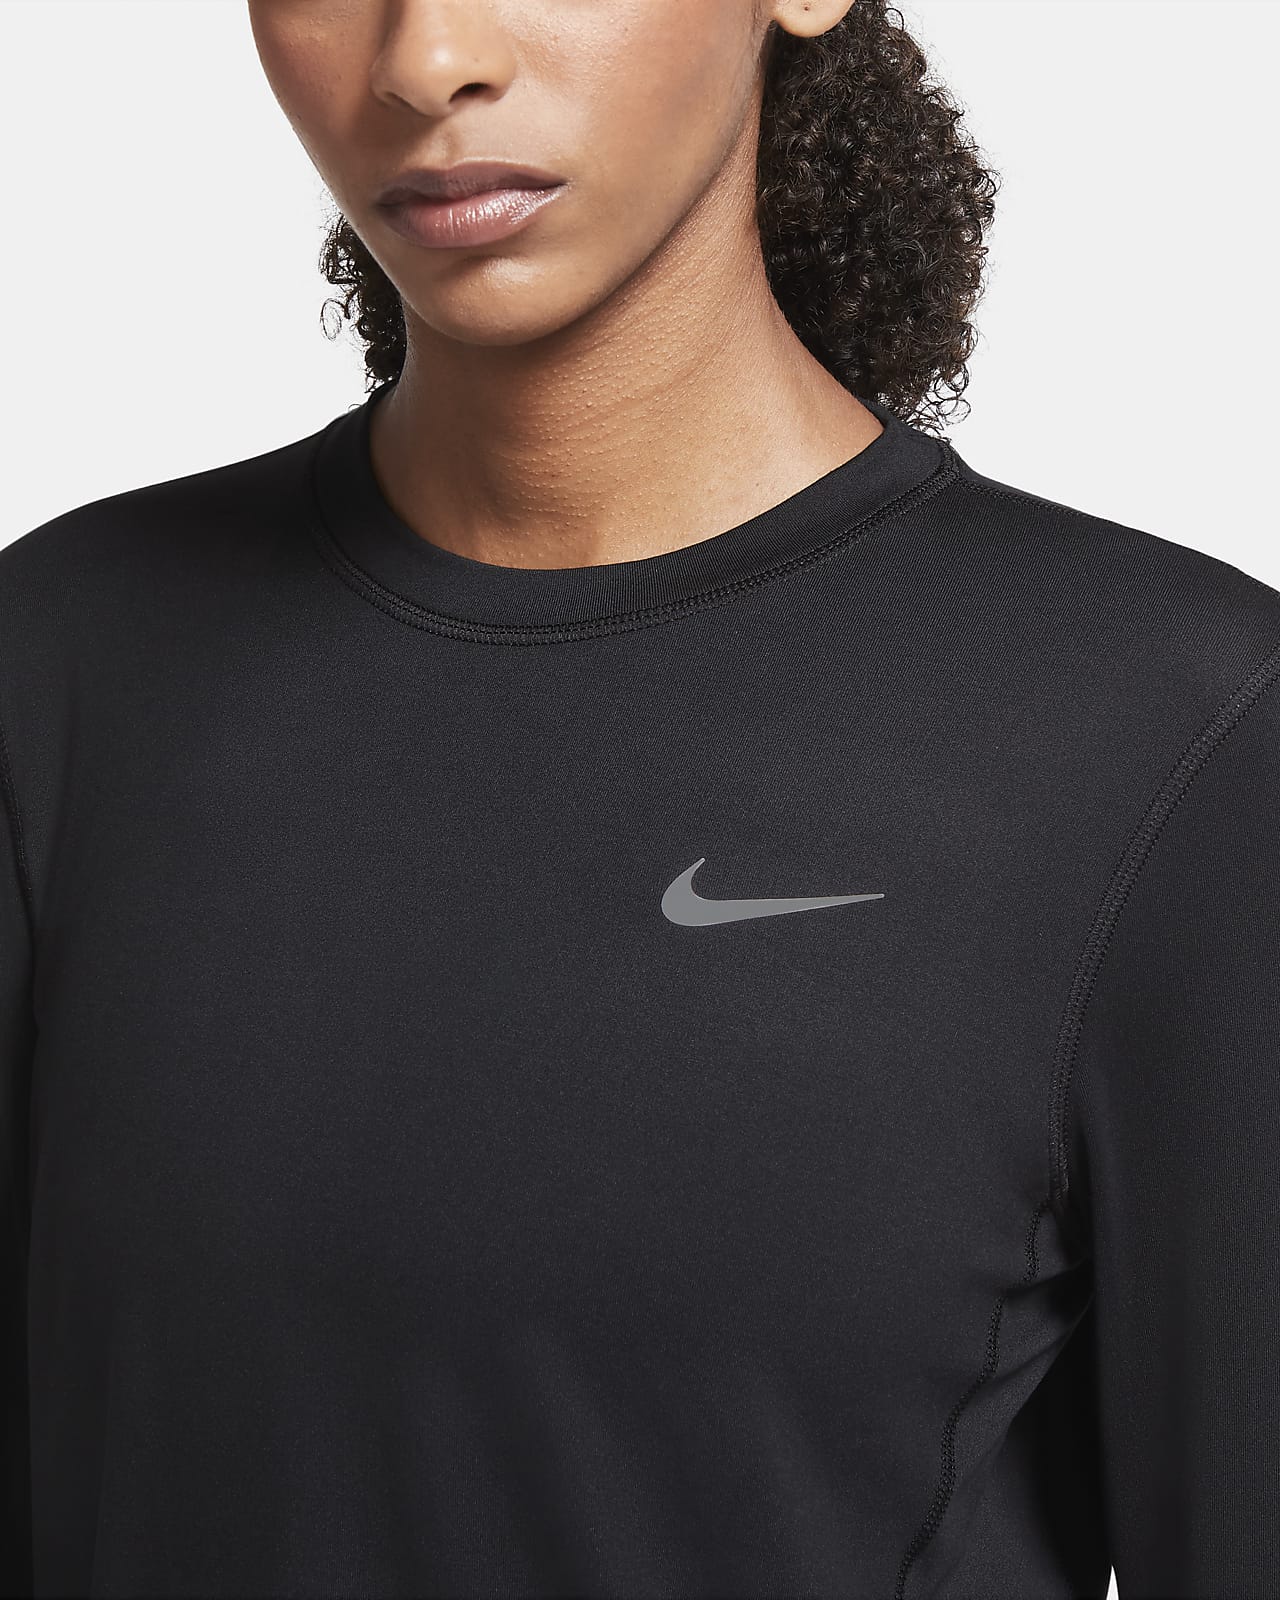 beetje kwaliteit Het is goedkoop Nike Dri-FIT Hardlooptop met ronde hals voor dames. Nike NL